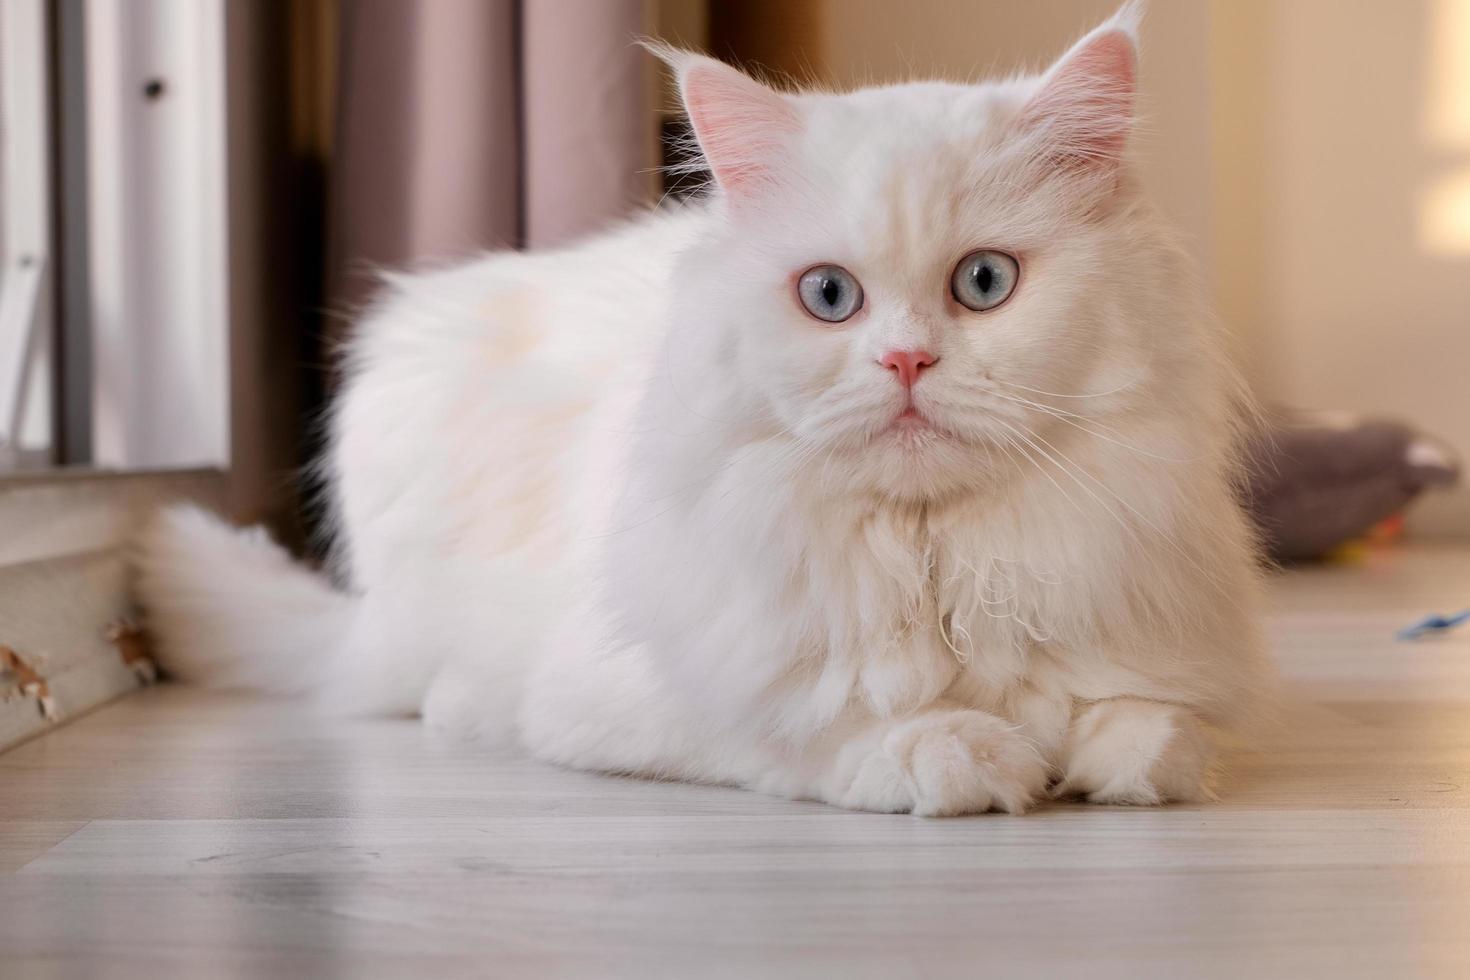 poupée persane visage chinchilla chat blanc. animal de compagnie mignon moelleux avec des yeux bleus photo